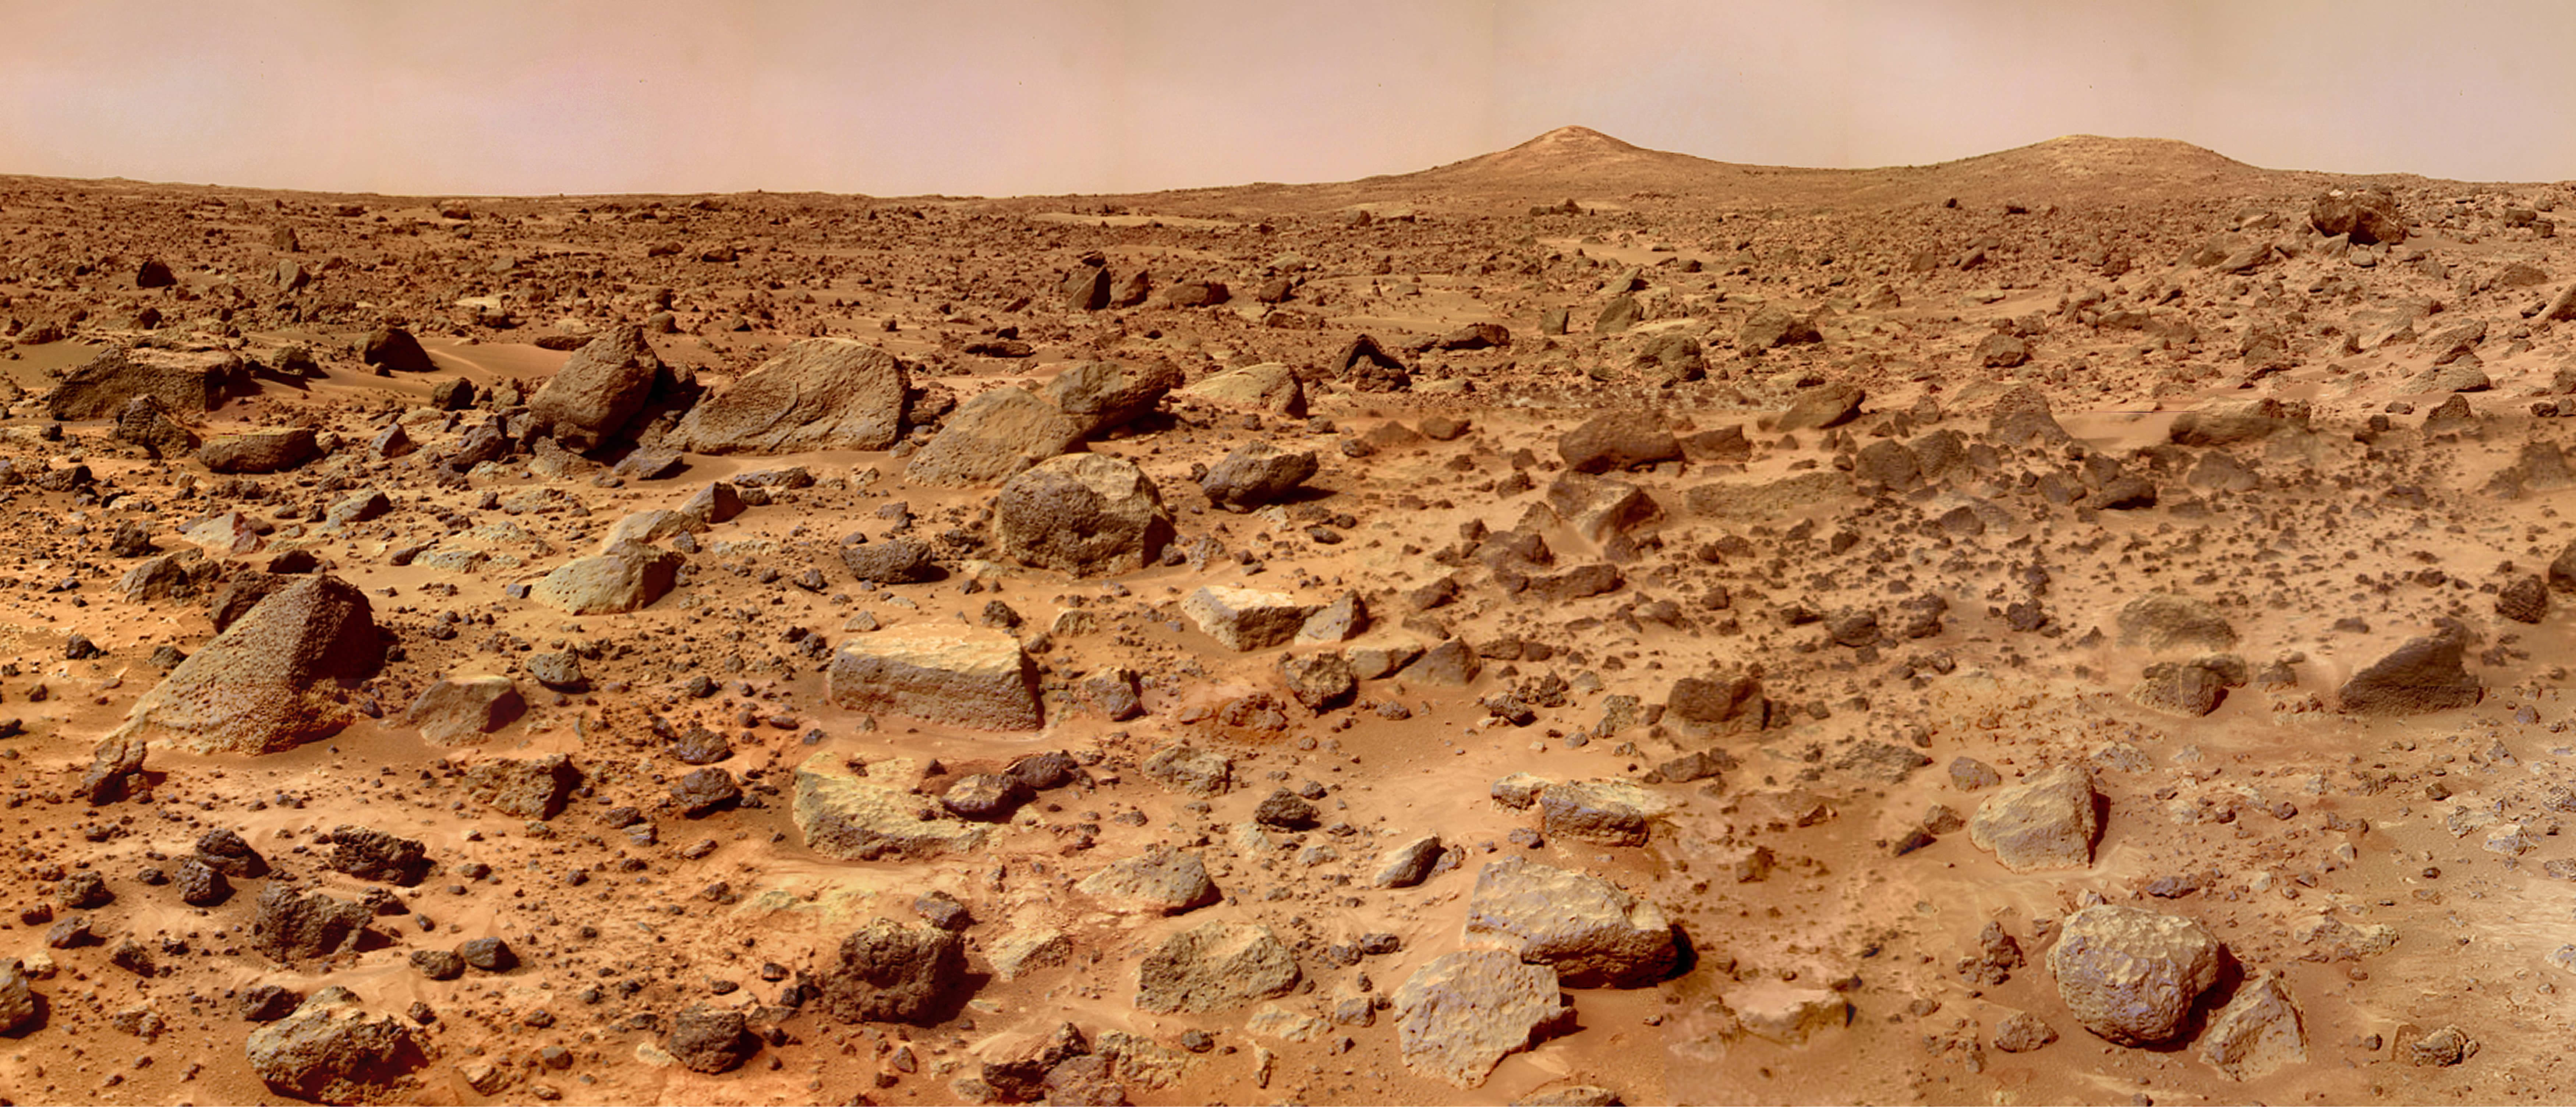 NASA档案旧火星图像引起新一代太空爱好者注意 展示火星“双峰”景象